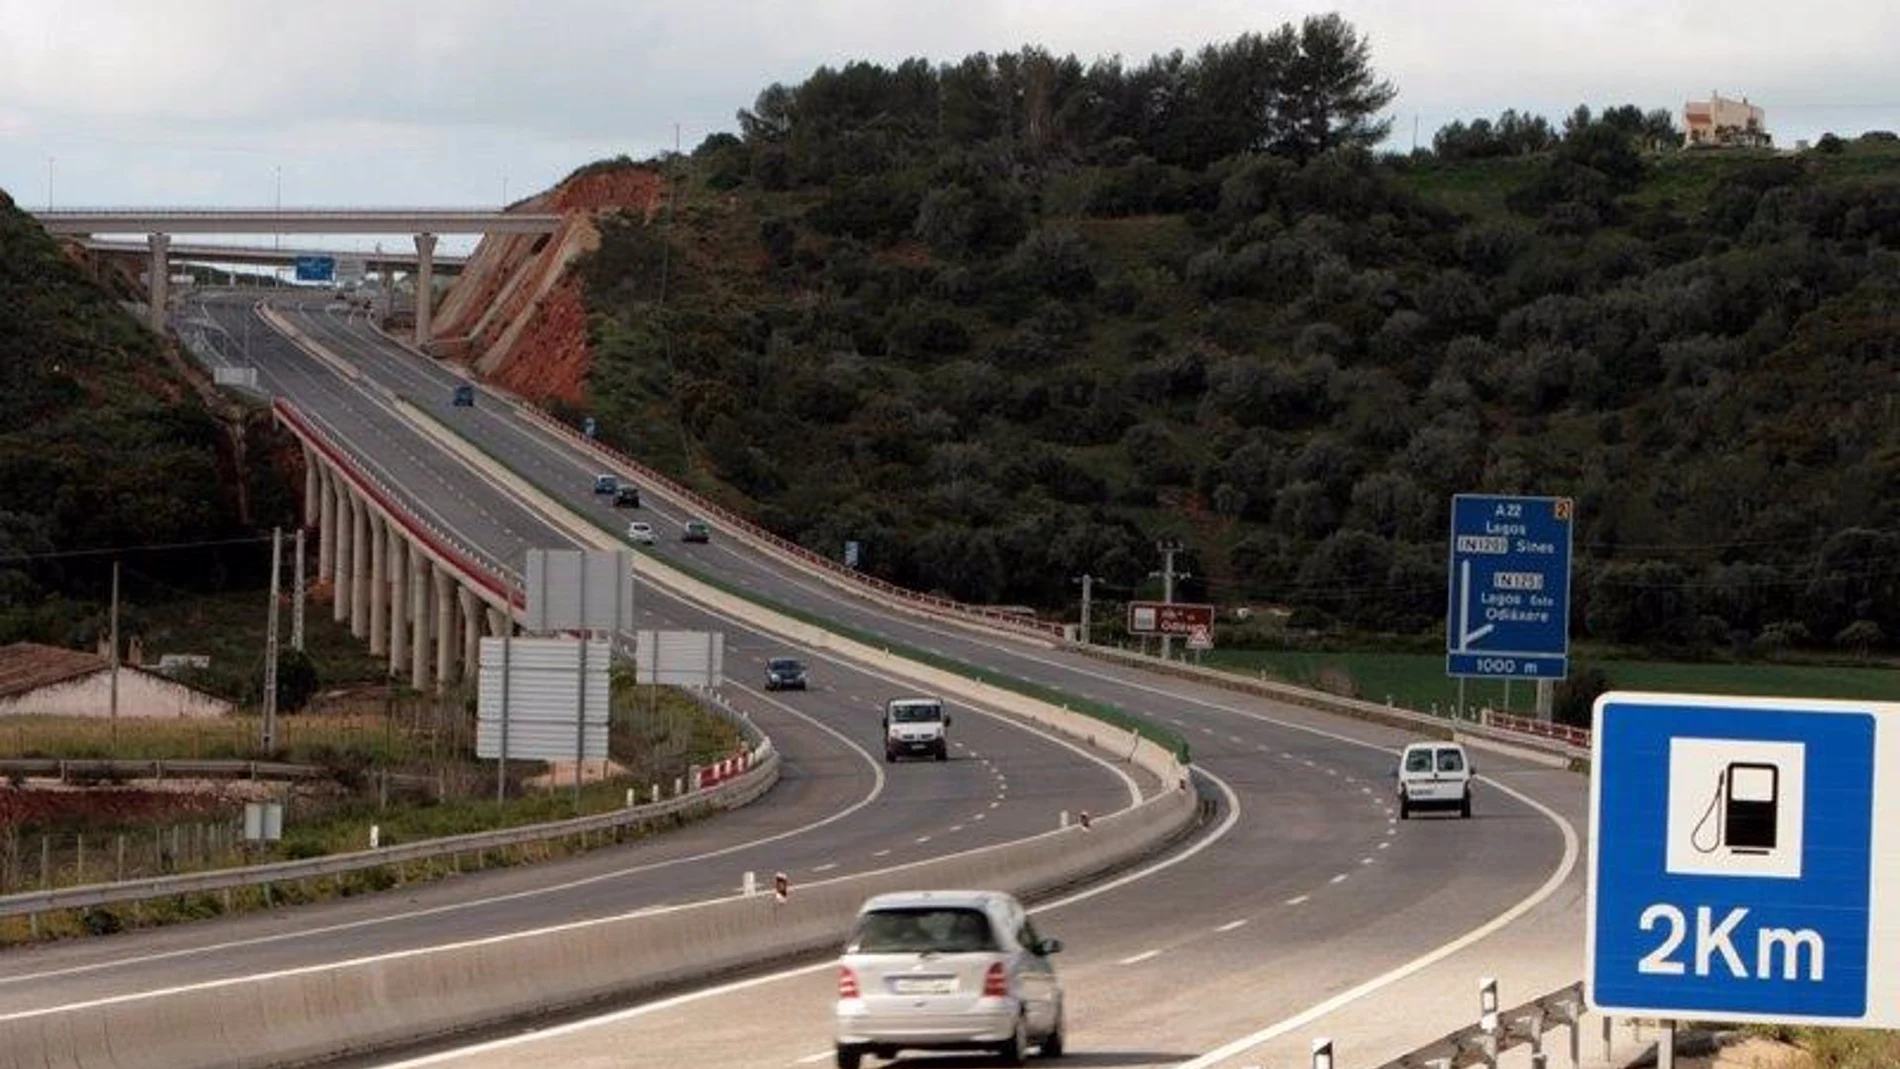 Economía.- (AMP) Ferrovial, Acciona y Sacyr se adjudican el proyecto de una autopista en Lima (Perú) por 3.131 millones